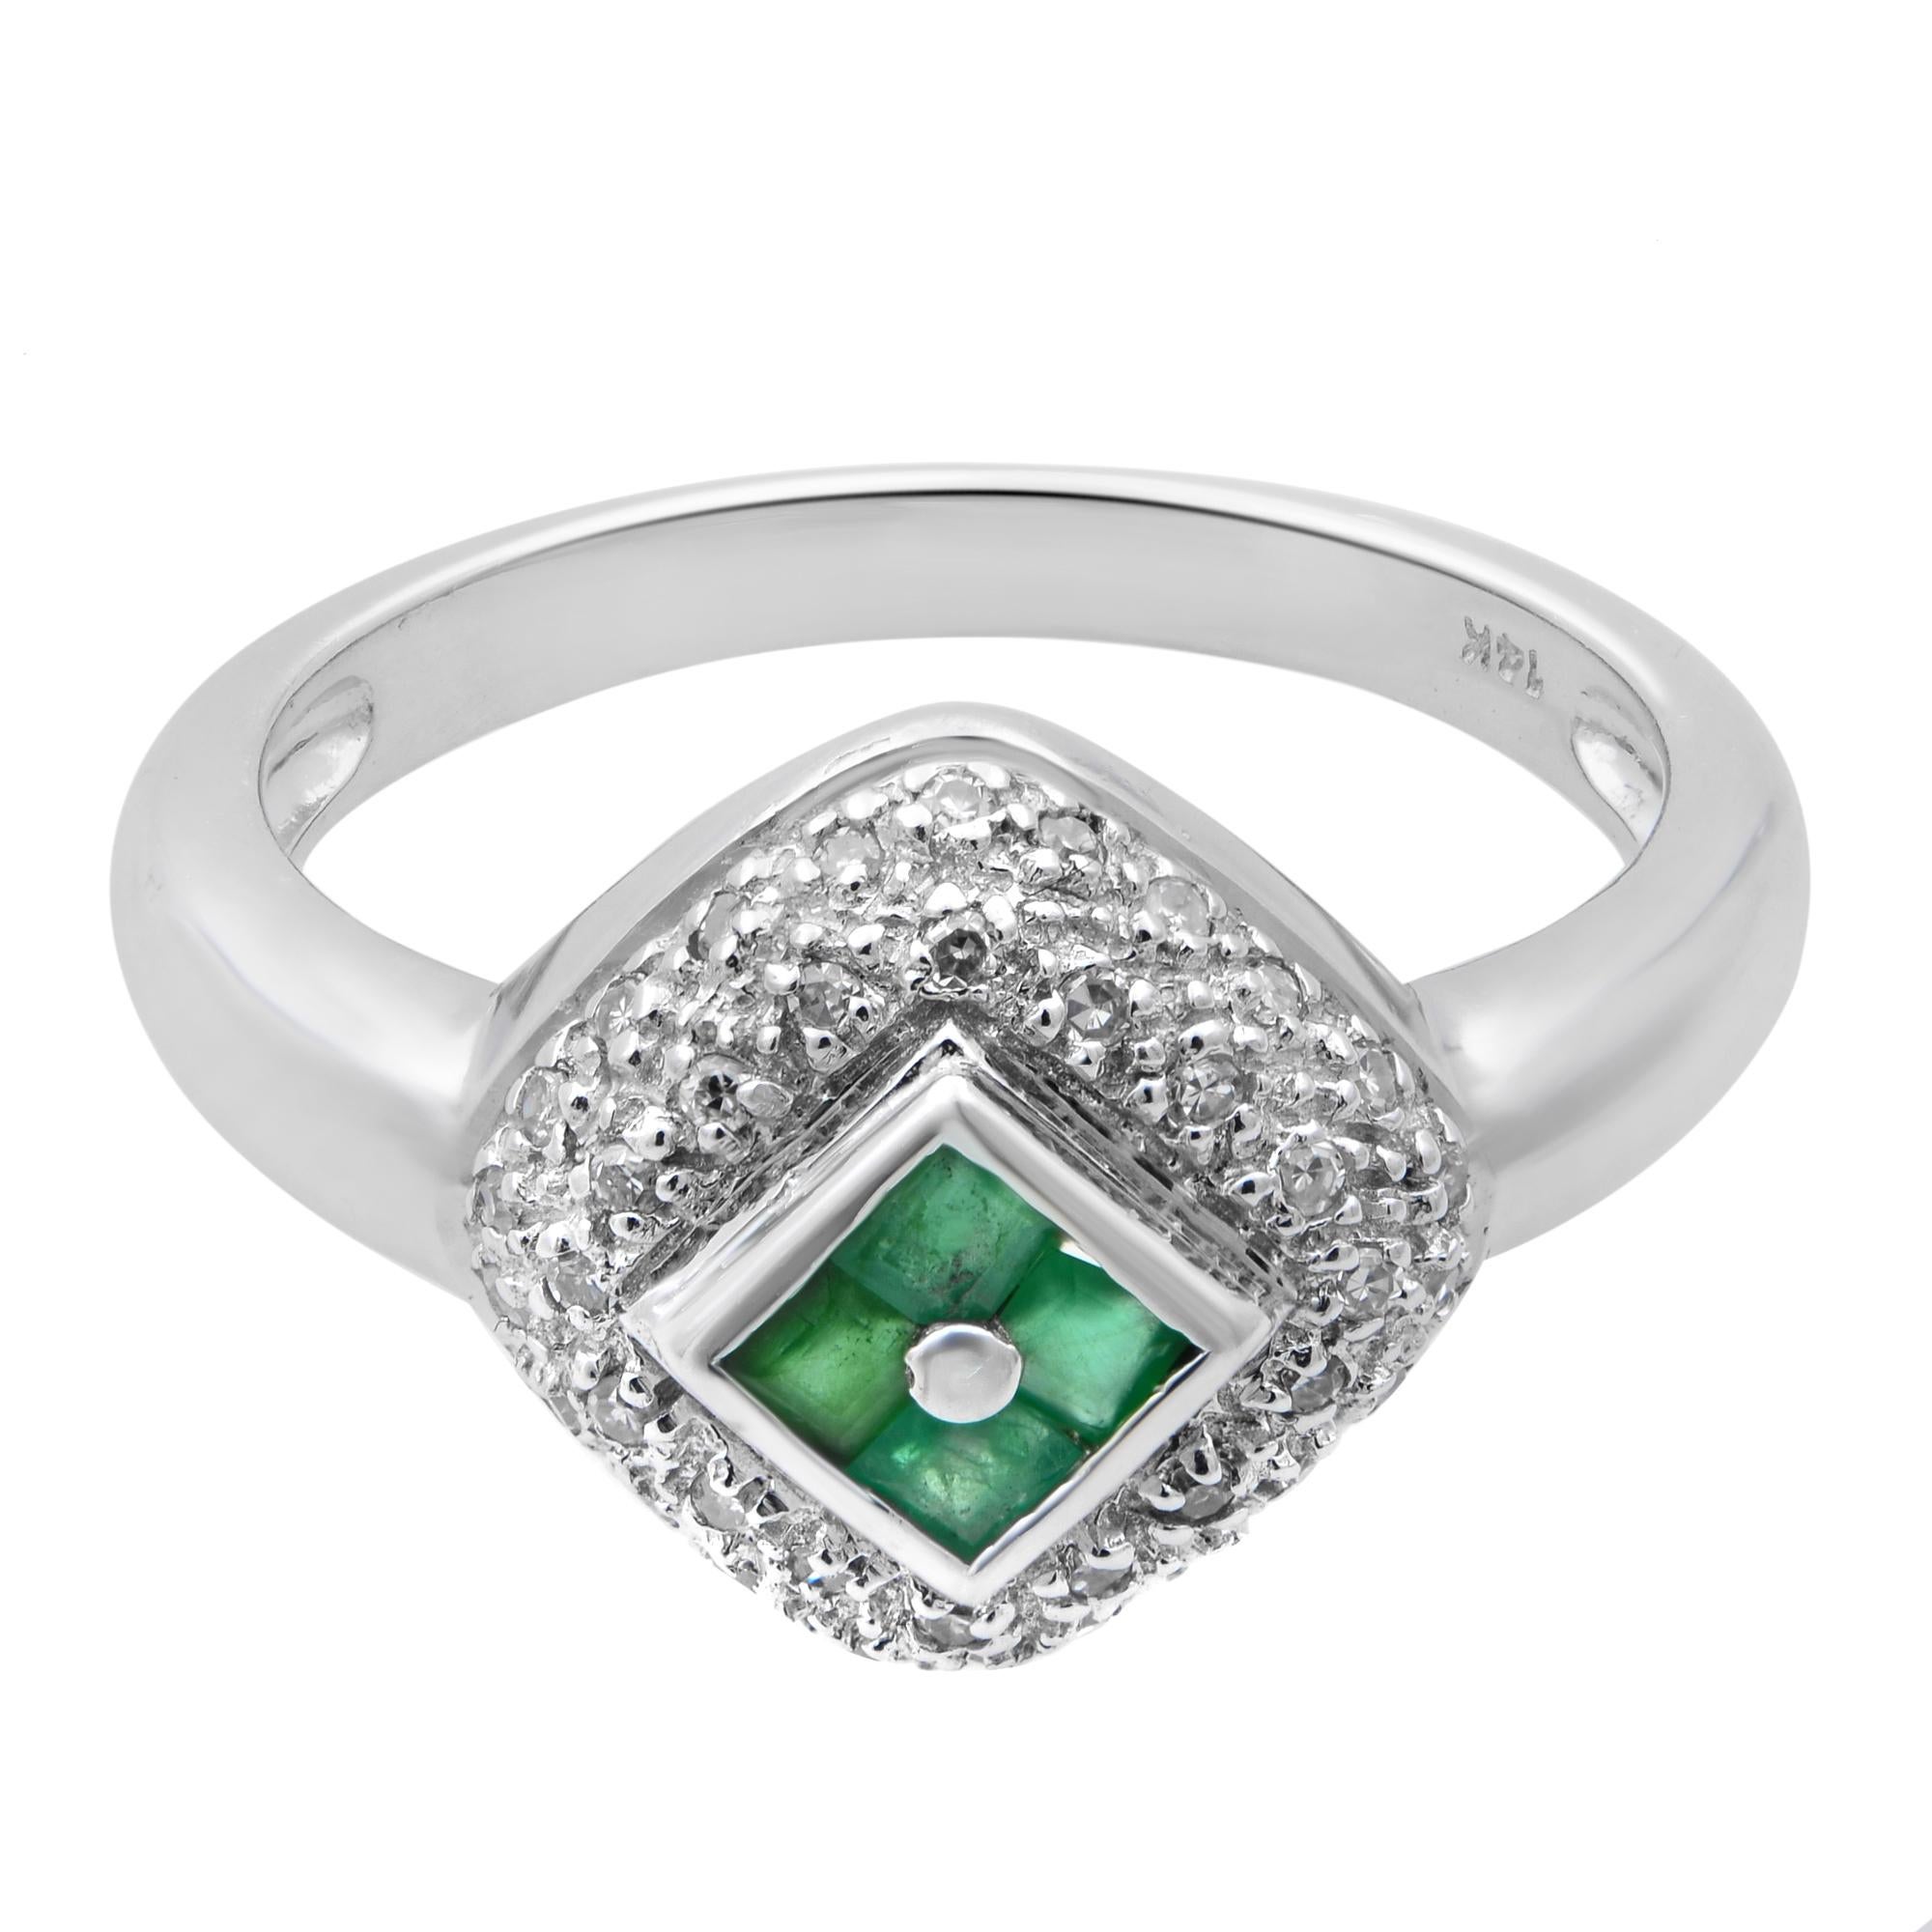 Modern Rachel Koen Diamond & Green Emerald Ladies Ring 14K White Gold Size 6.5 For Sale